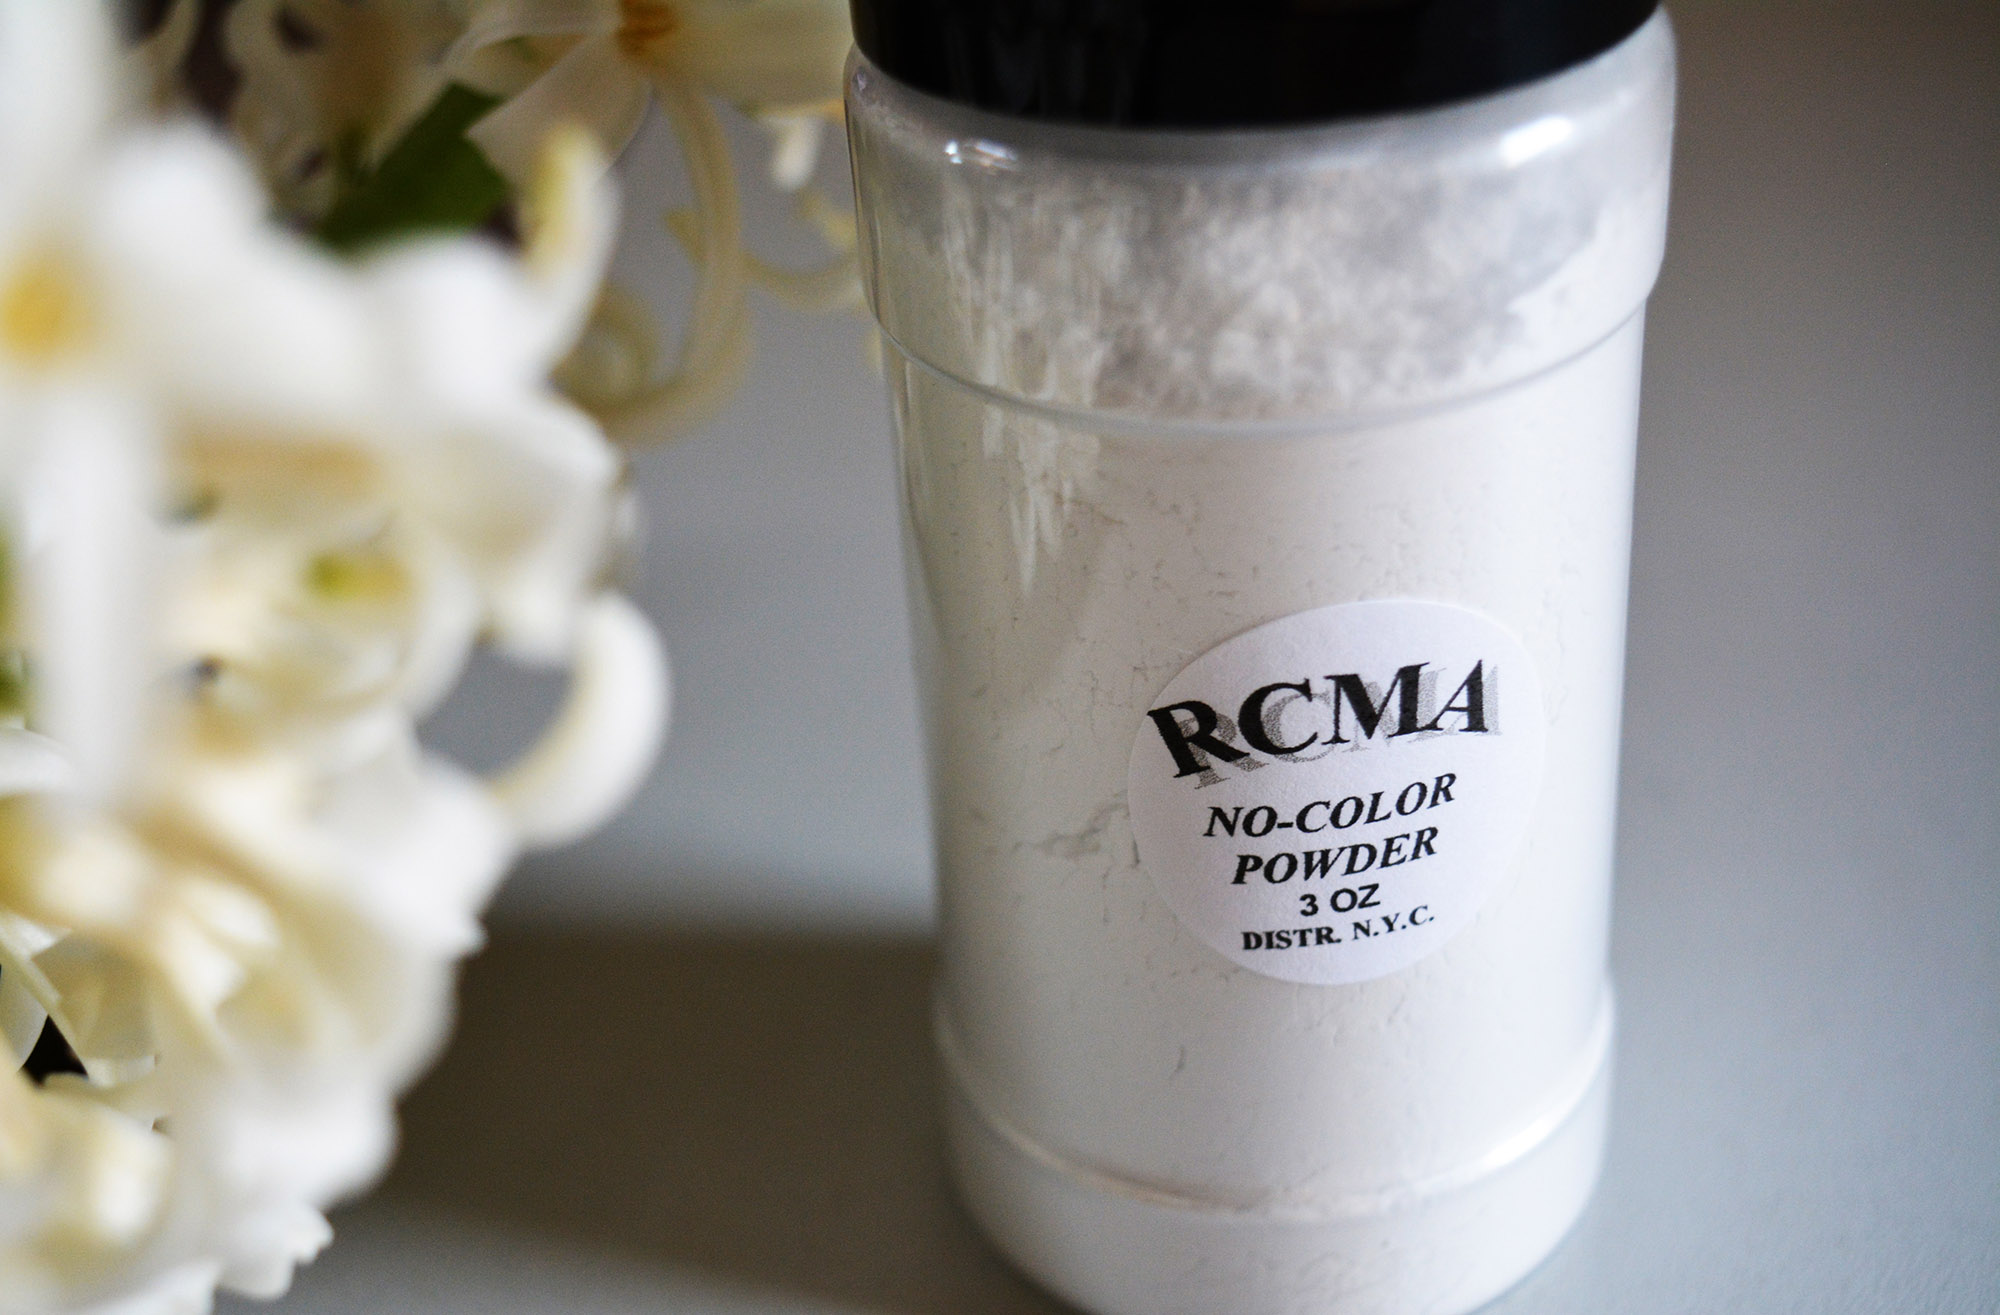 RCMA Foundation / Concealer palette & No-Color Powder